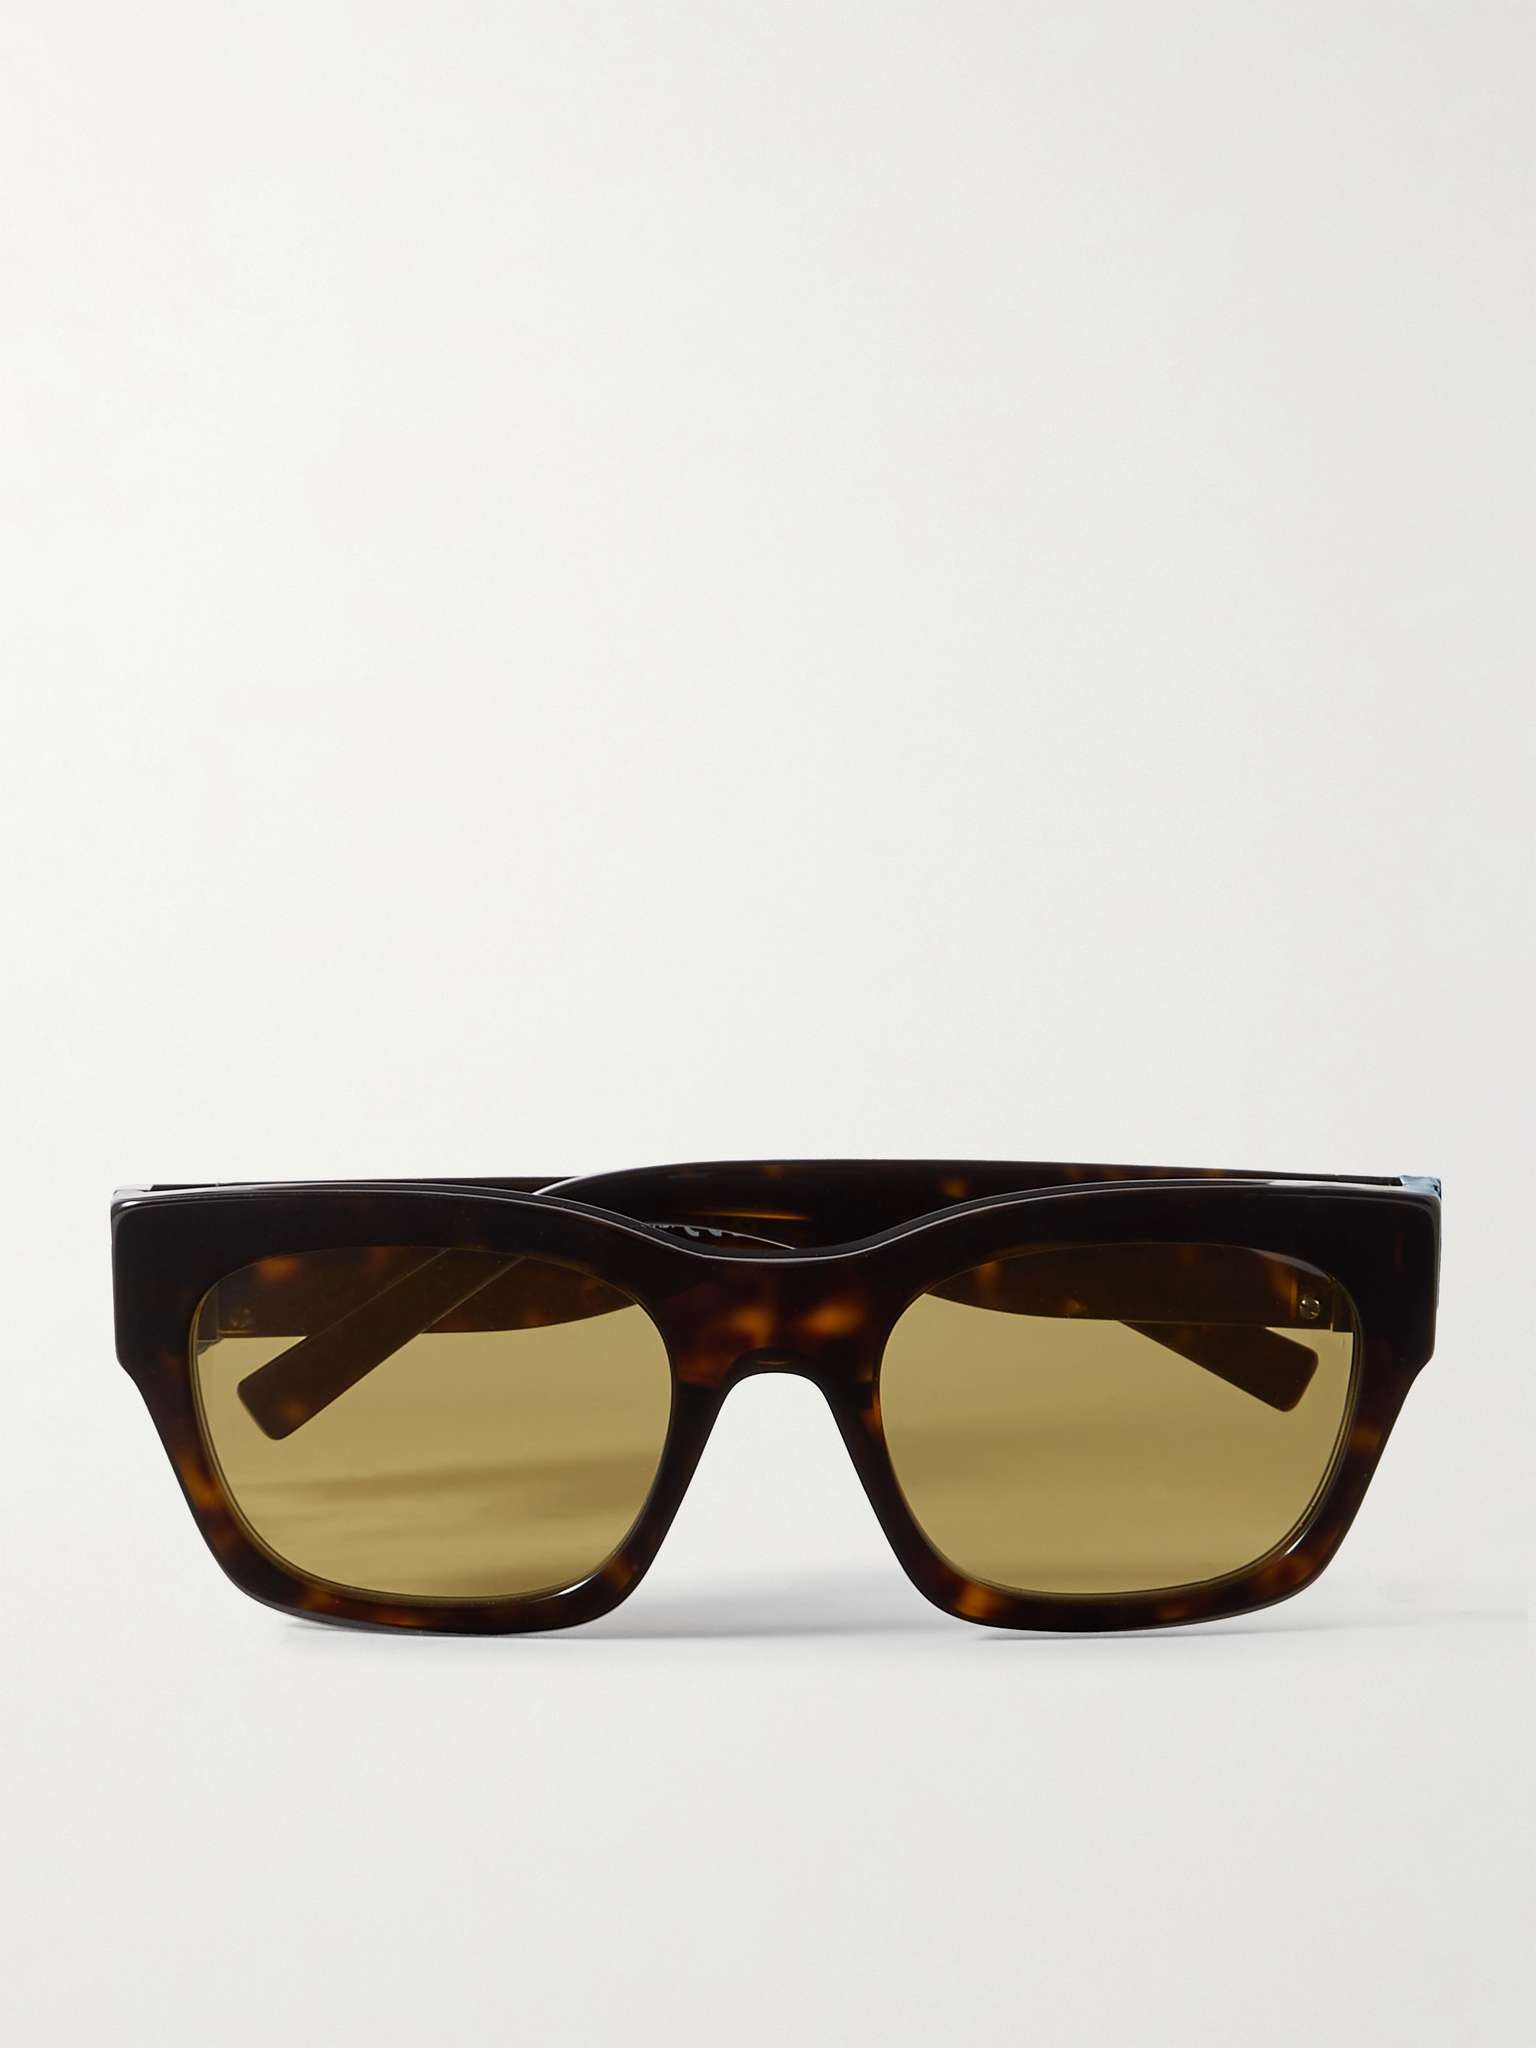 4G D-Frame Tortoiseshell Acetate Sunglasses - 1